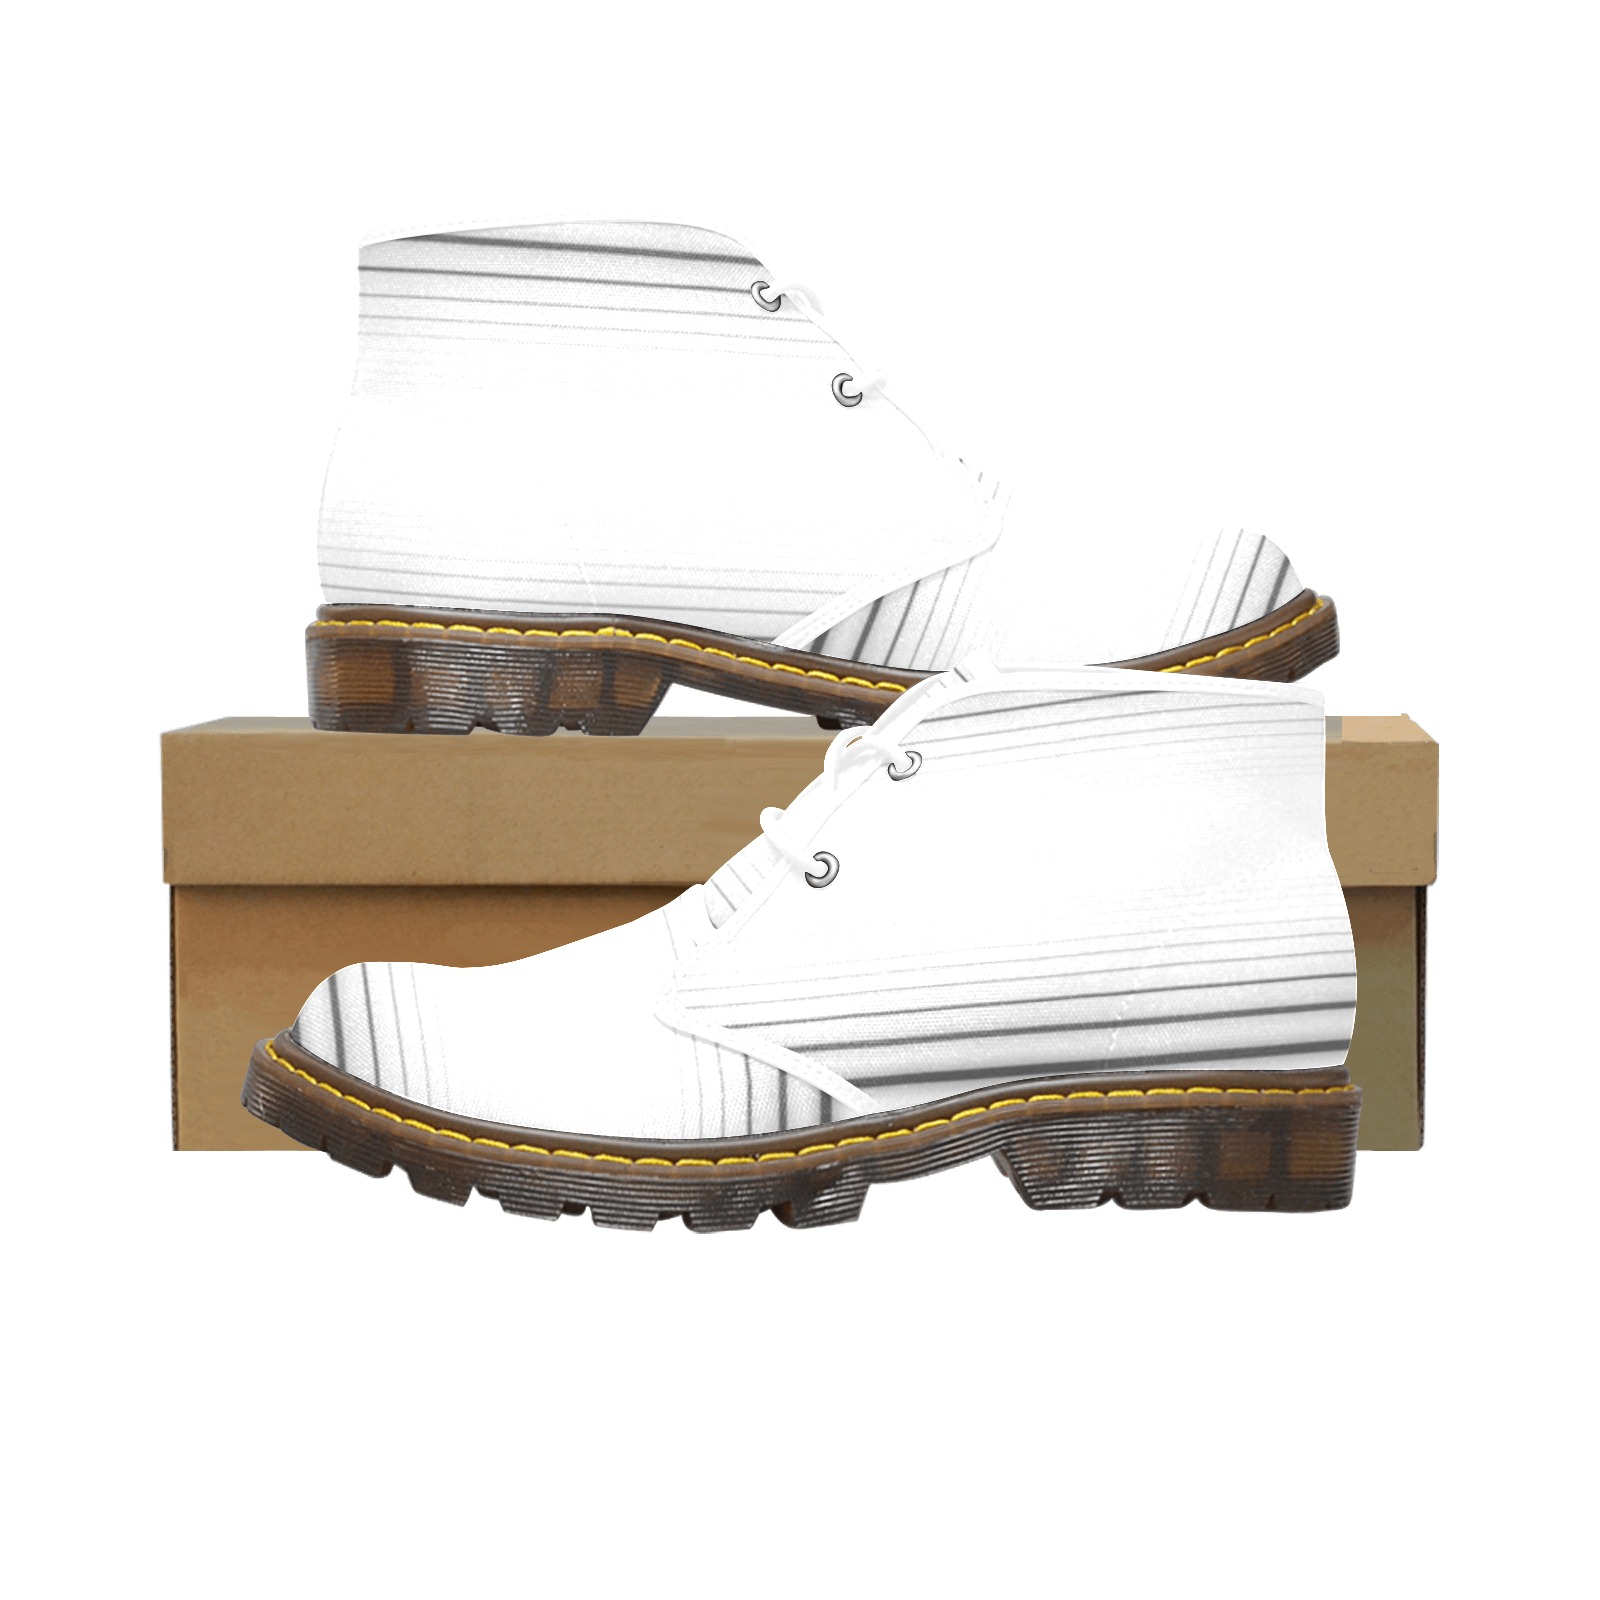 Men Chukka Boot - White Men's Canvas Chukka Boots (Model 2402-1)